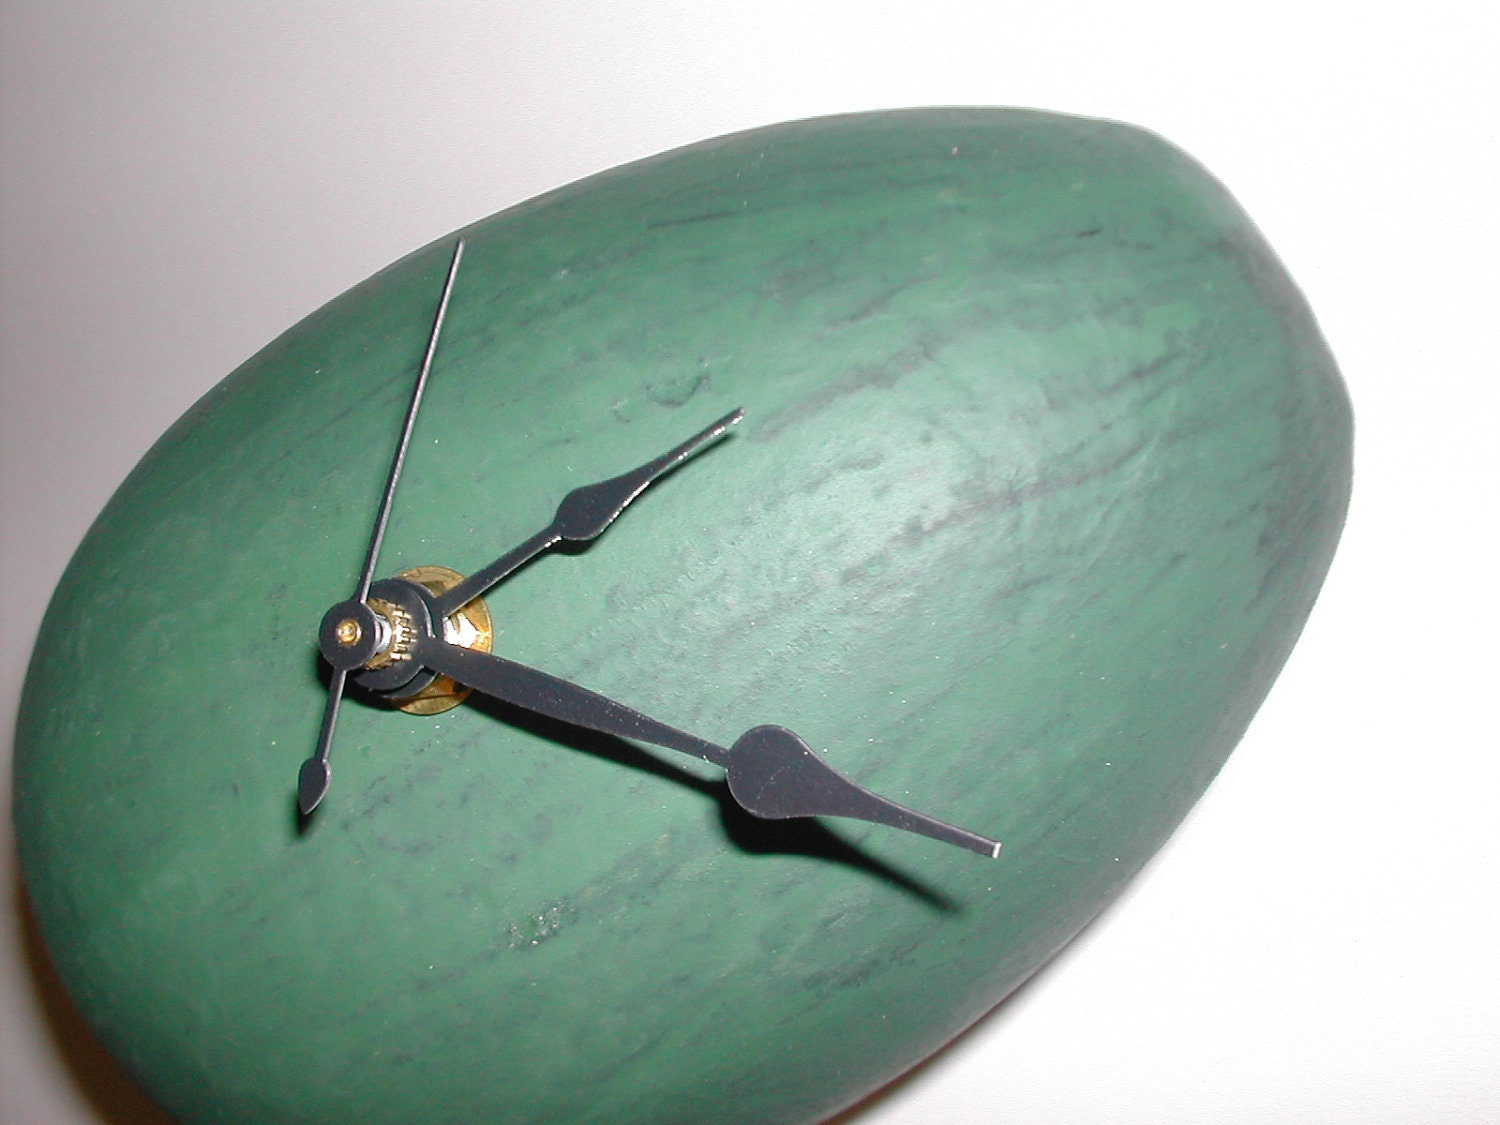 İlginç Yeşil yumurta saat                         Tasarım : Woodstock Clocks  